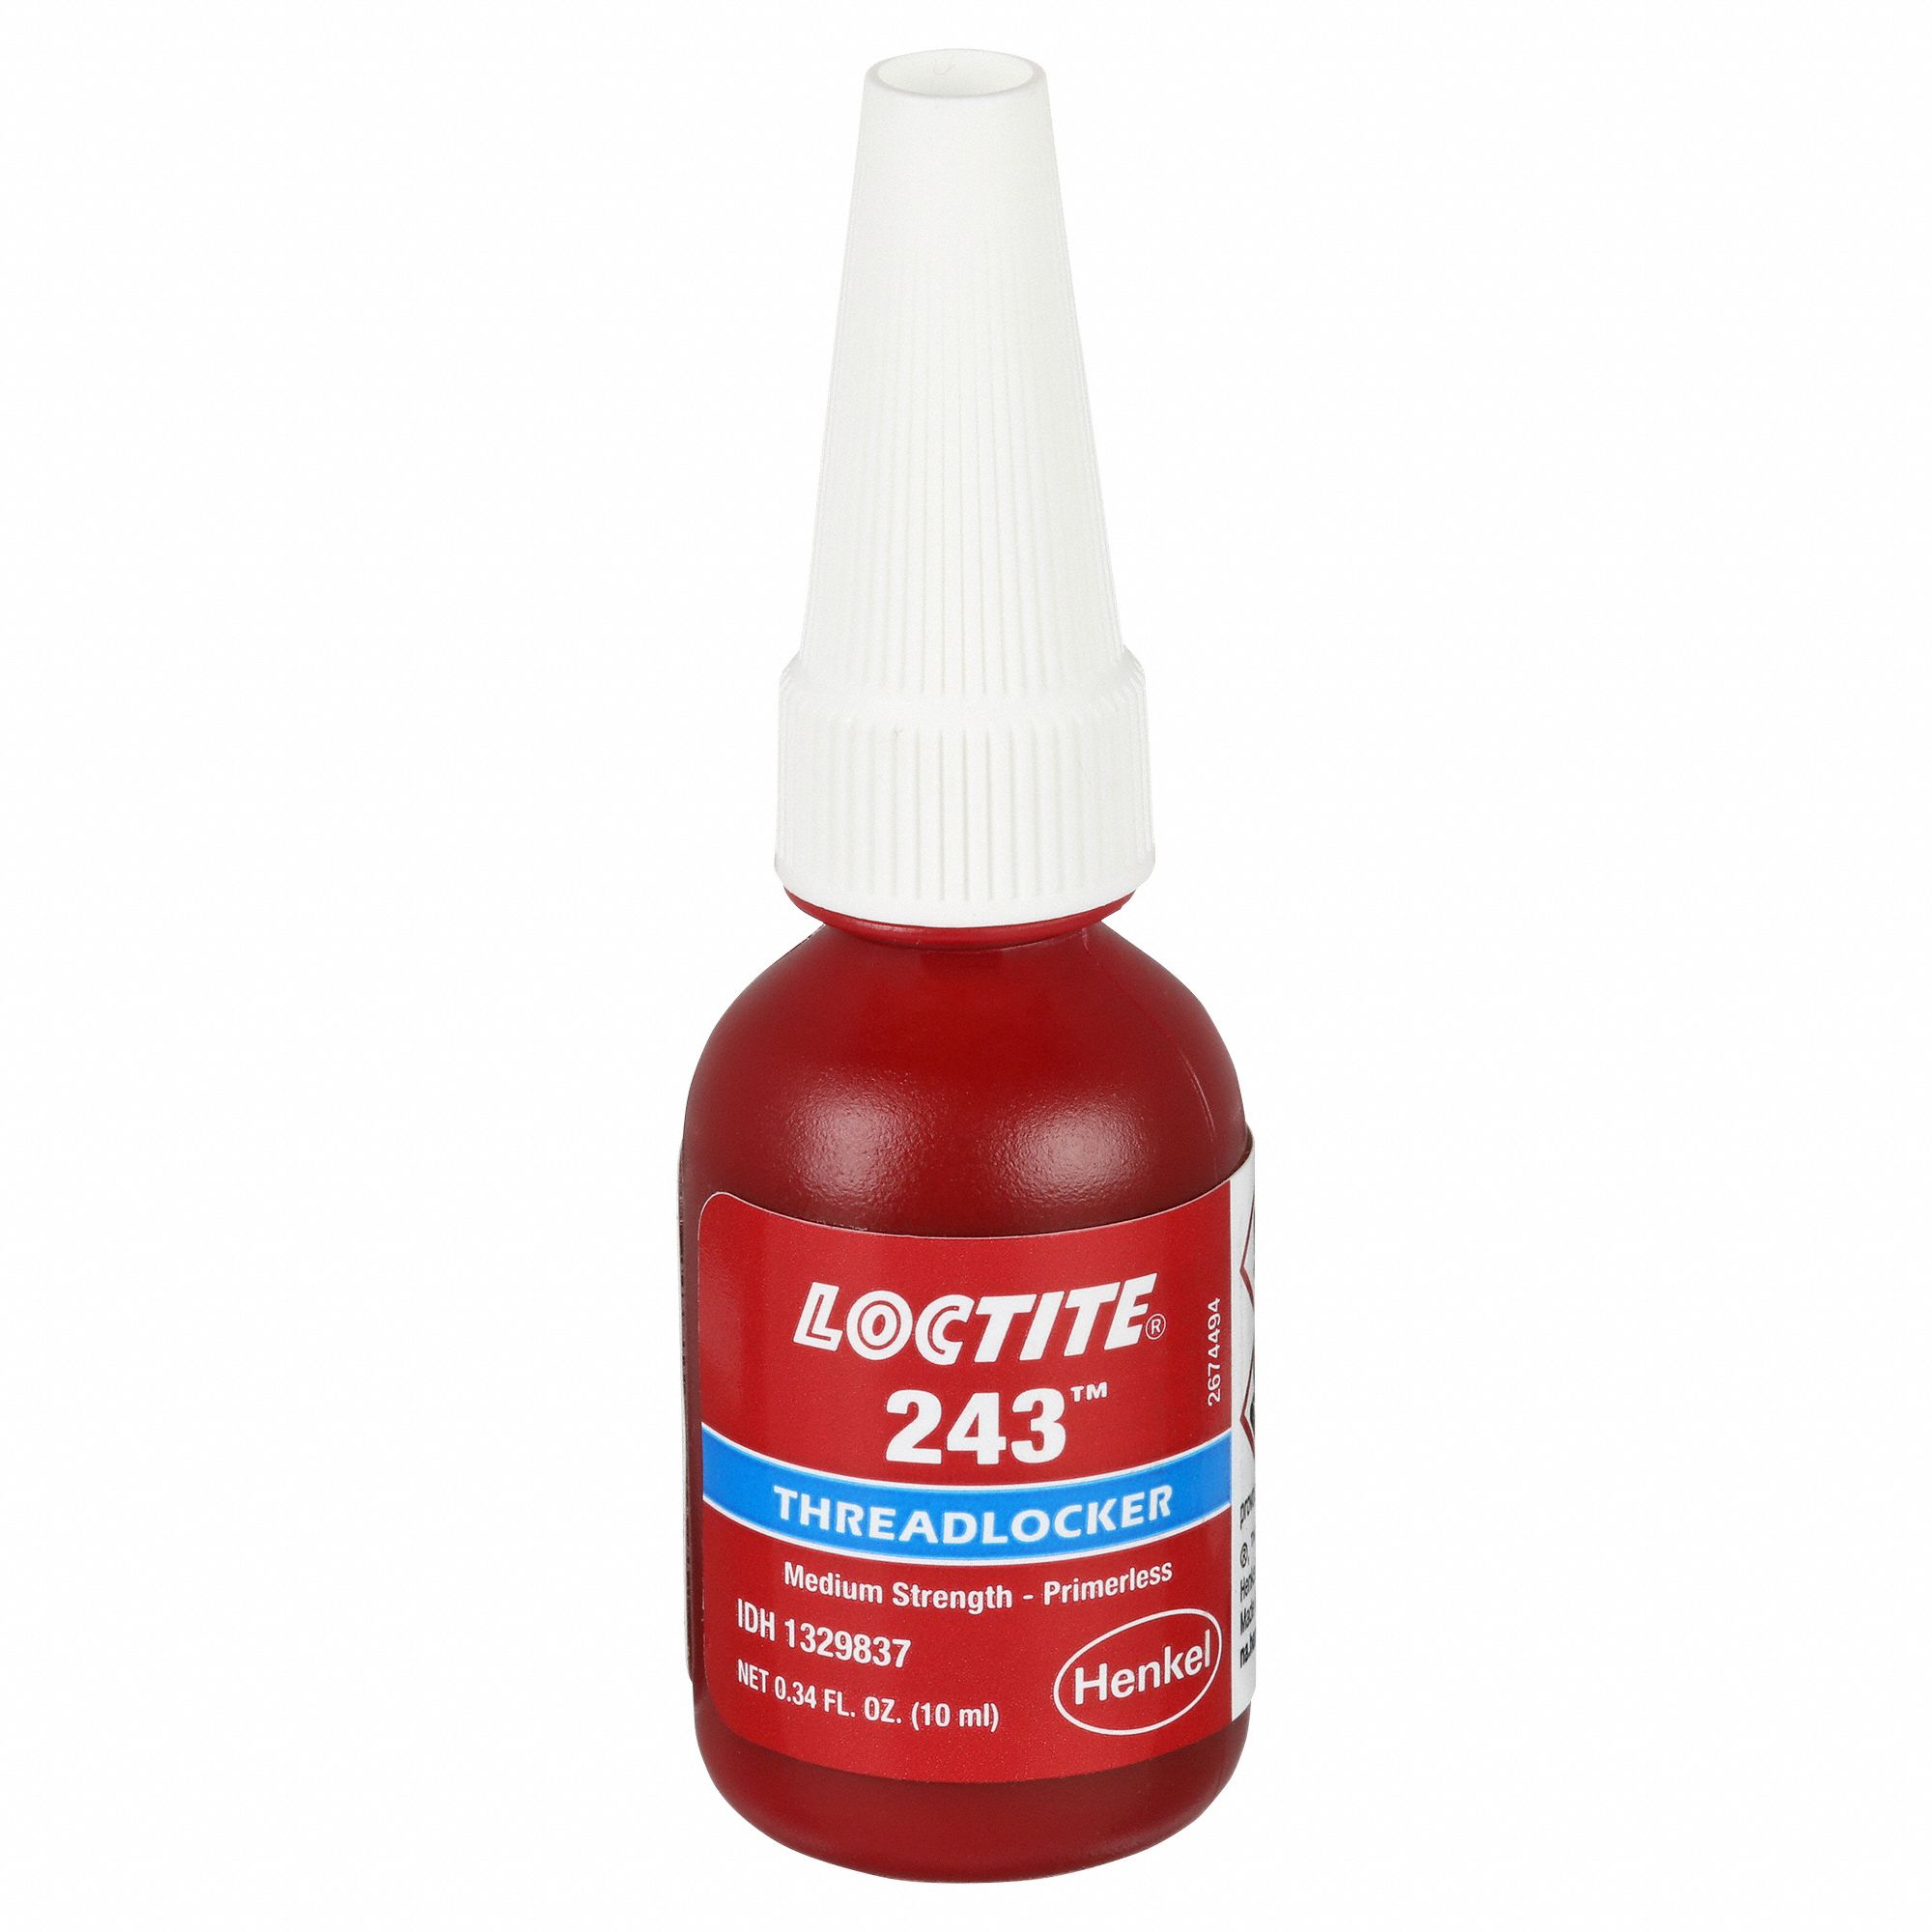  Loctite 1329505 Blue 243 Medium Strength Threadlocker, 360  Degree F Maximum Temperature, 250 mL Bottle : Automotive